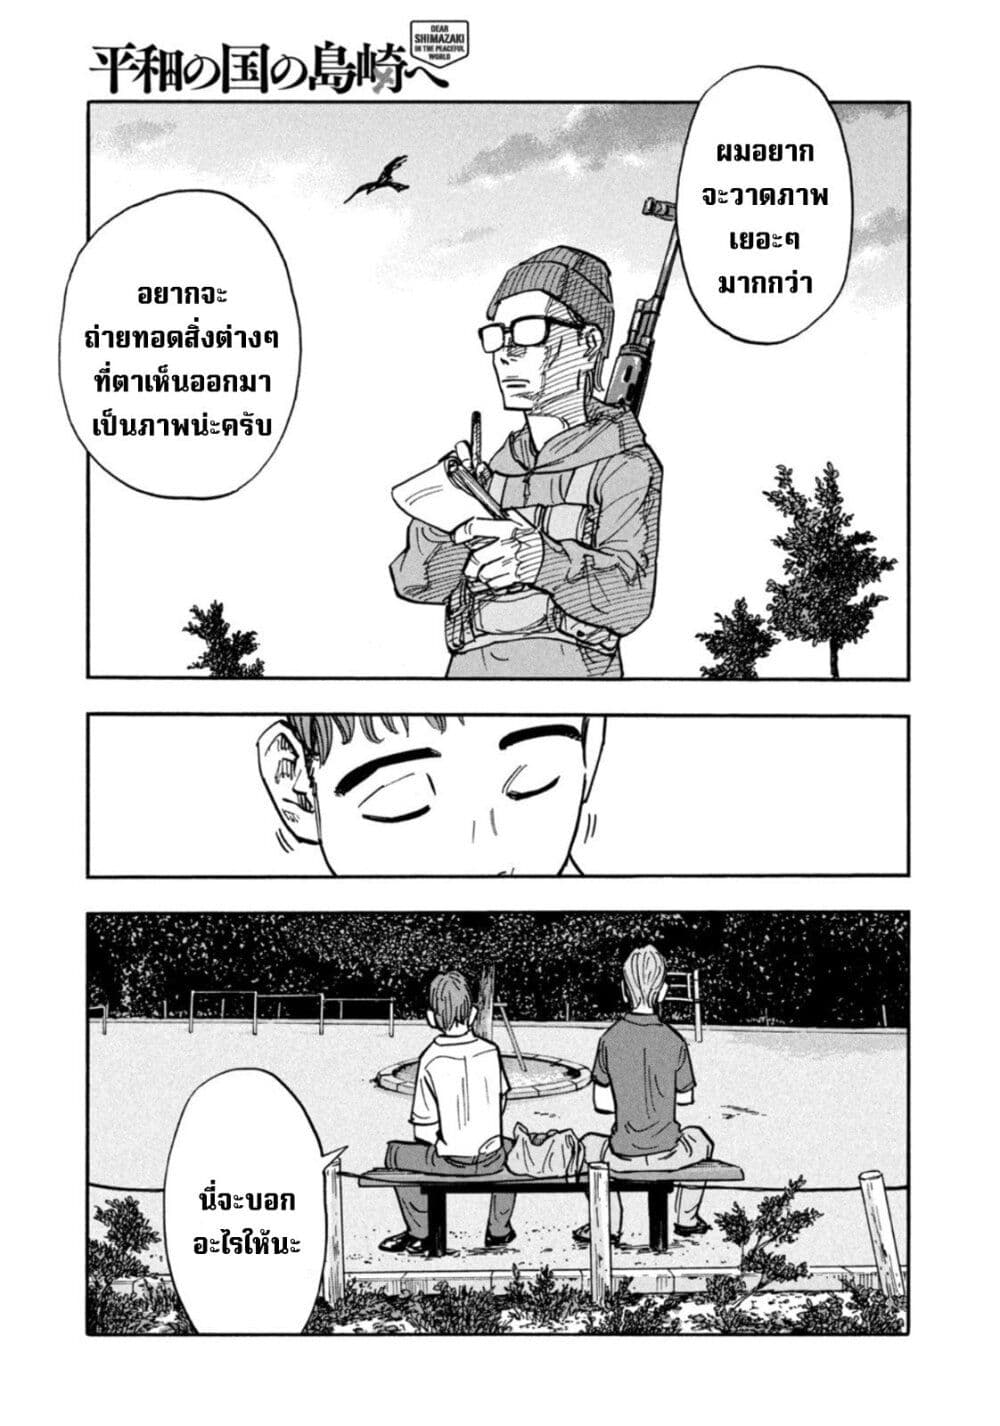 Heiwa no Kuni no Shimazaki e ตอนที่ 11 (11)